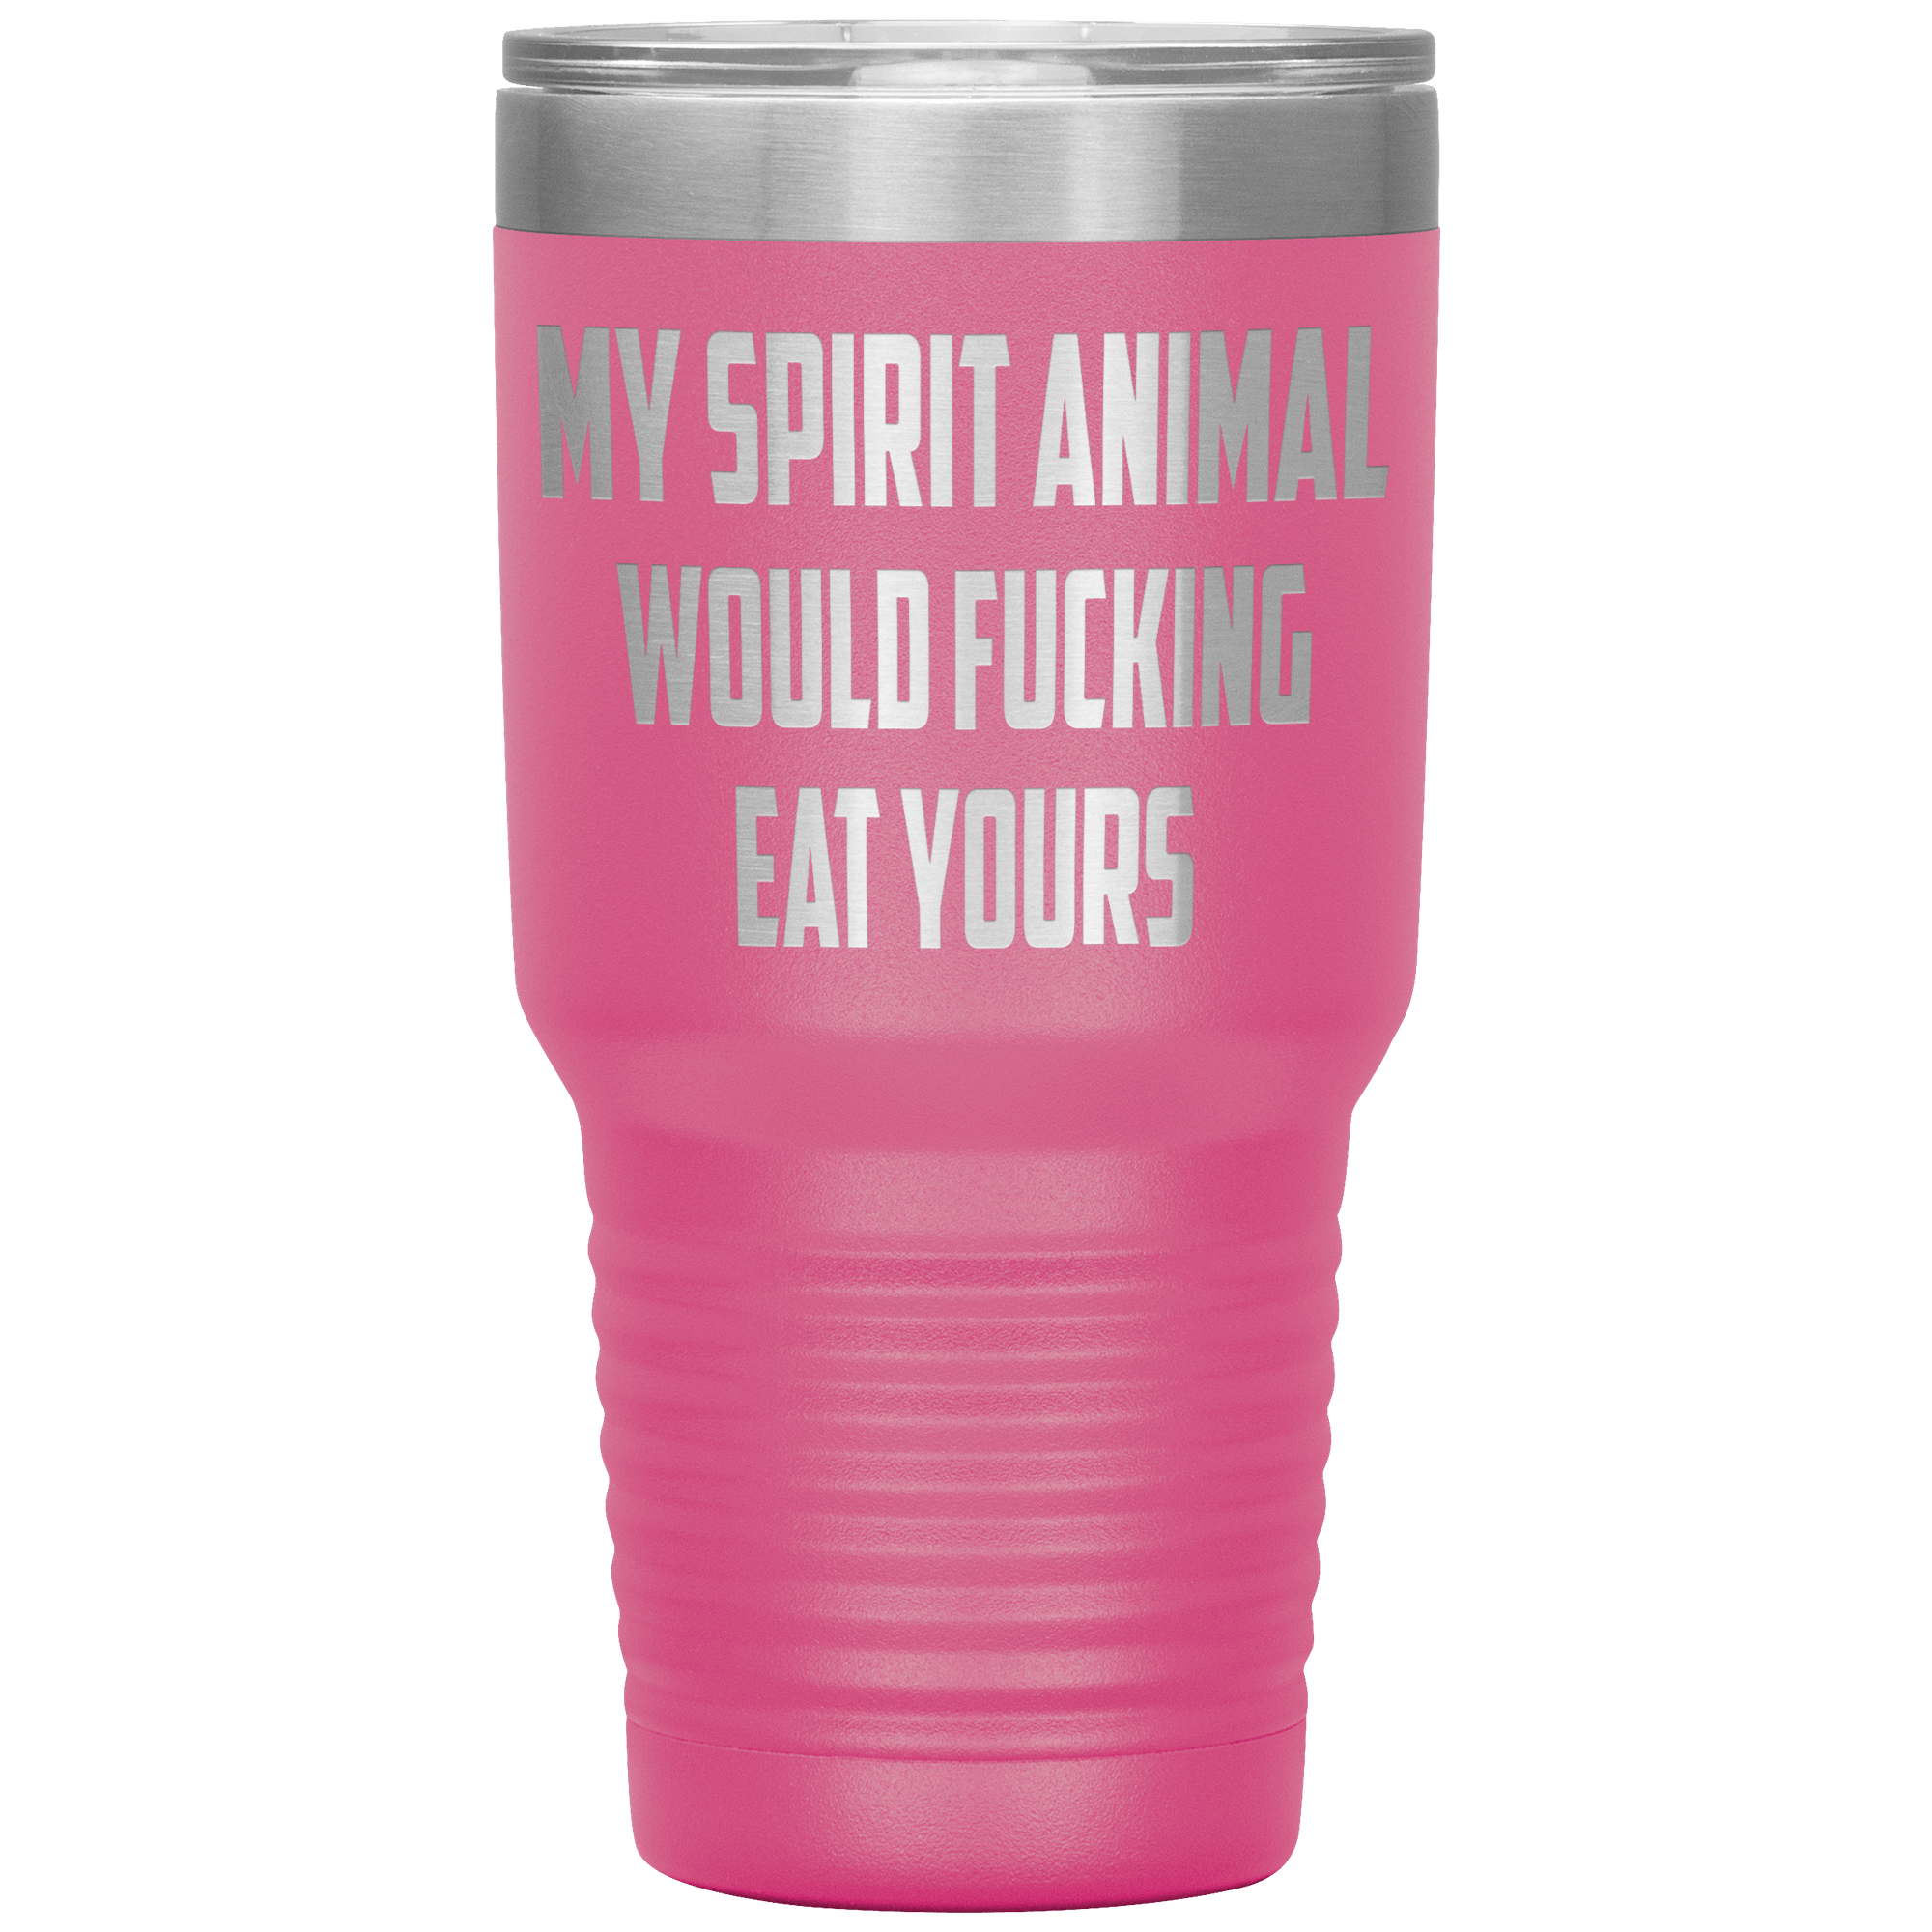 " MY SPIRIT ANIMAL WOULD FUCKING EAT YOURS " TUMBLER